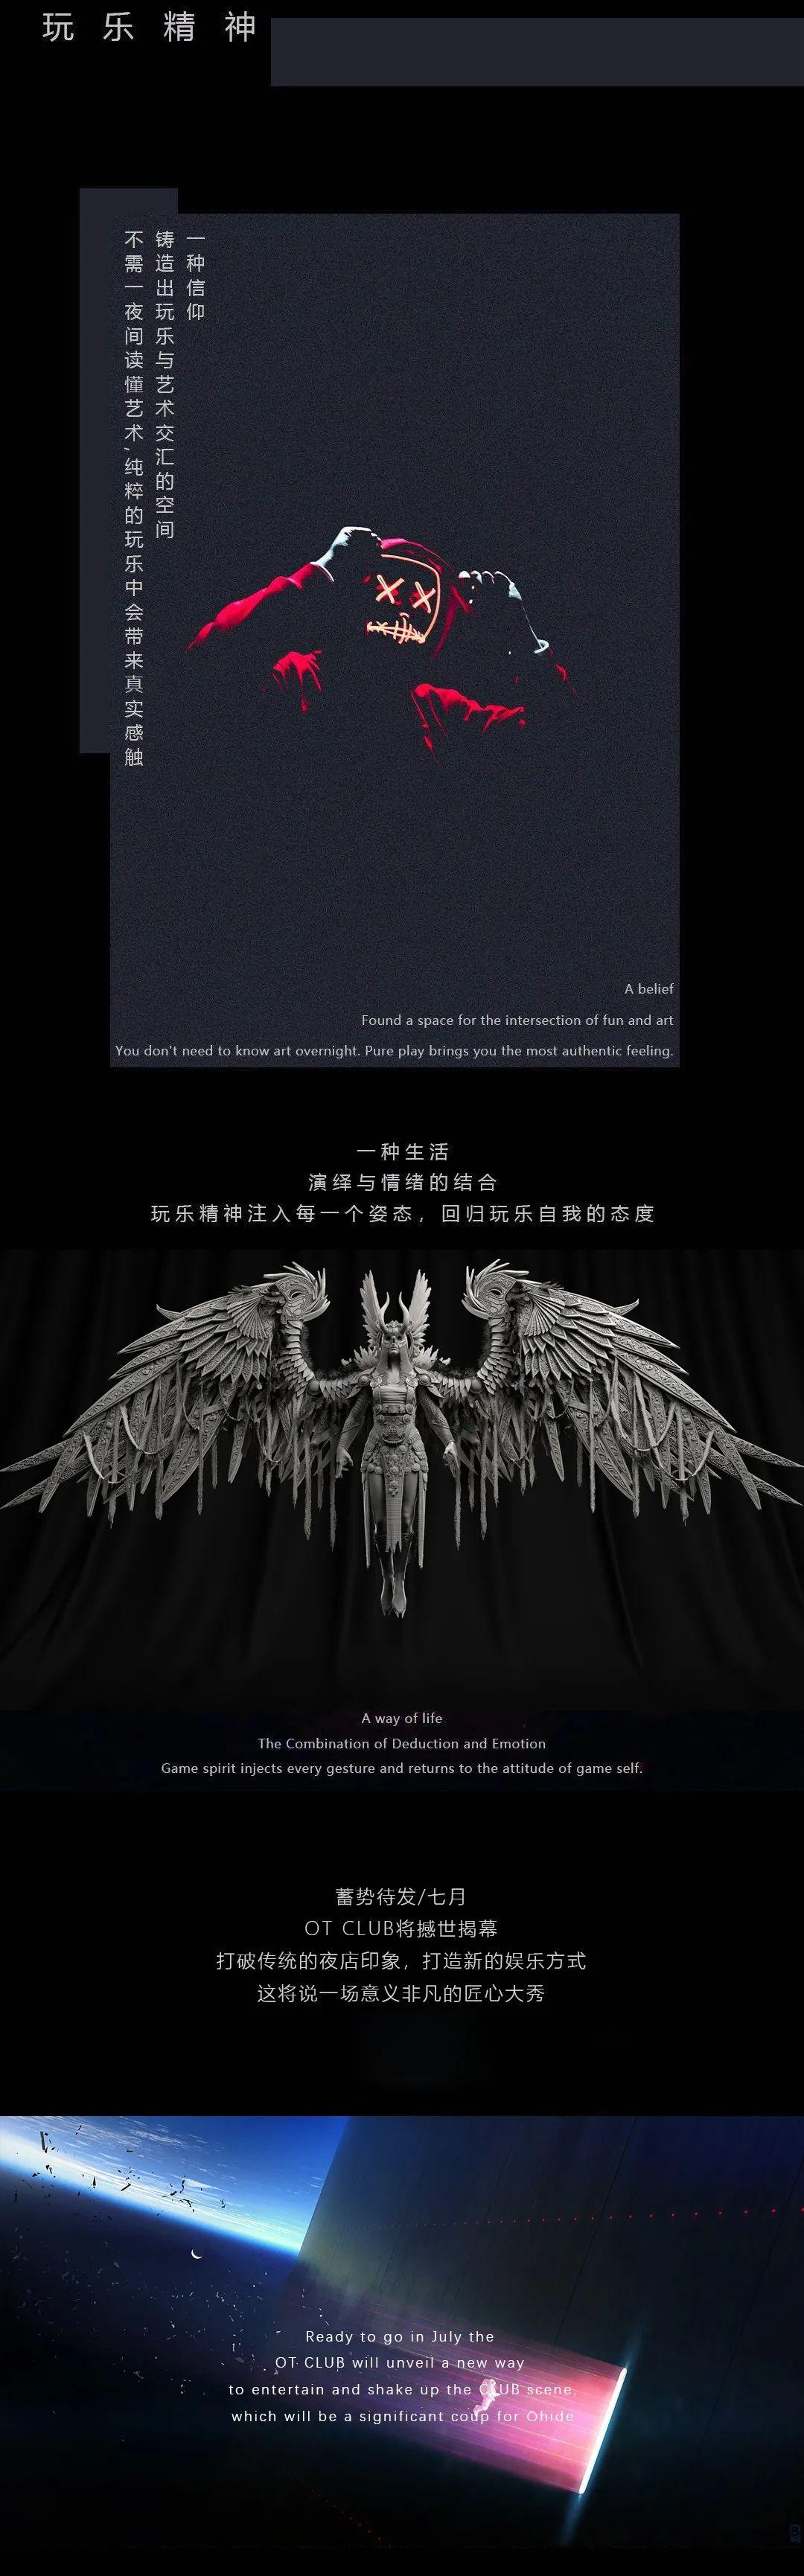 华艺海报设计韩亮素材图片下载-素材编号03836014-素材天下图库